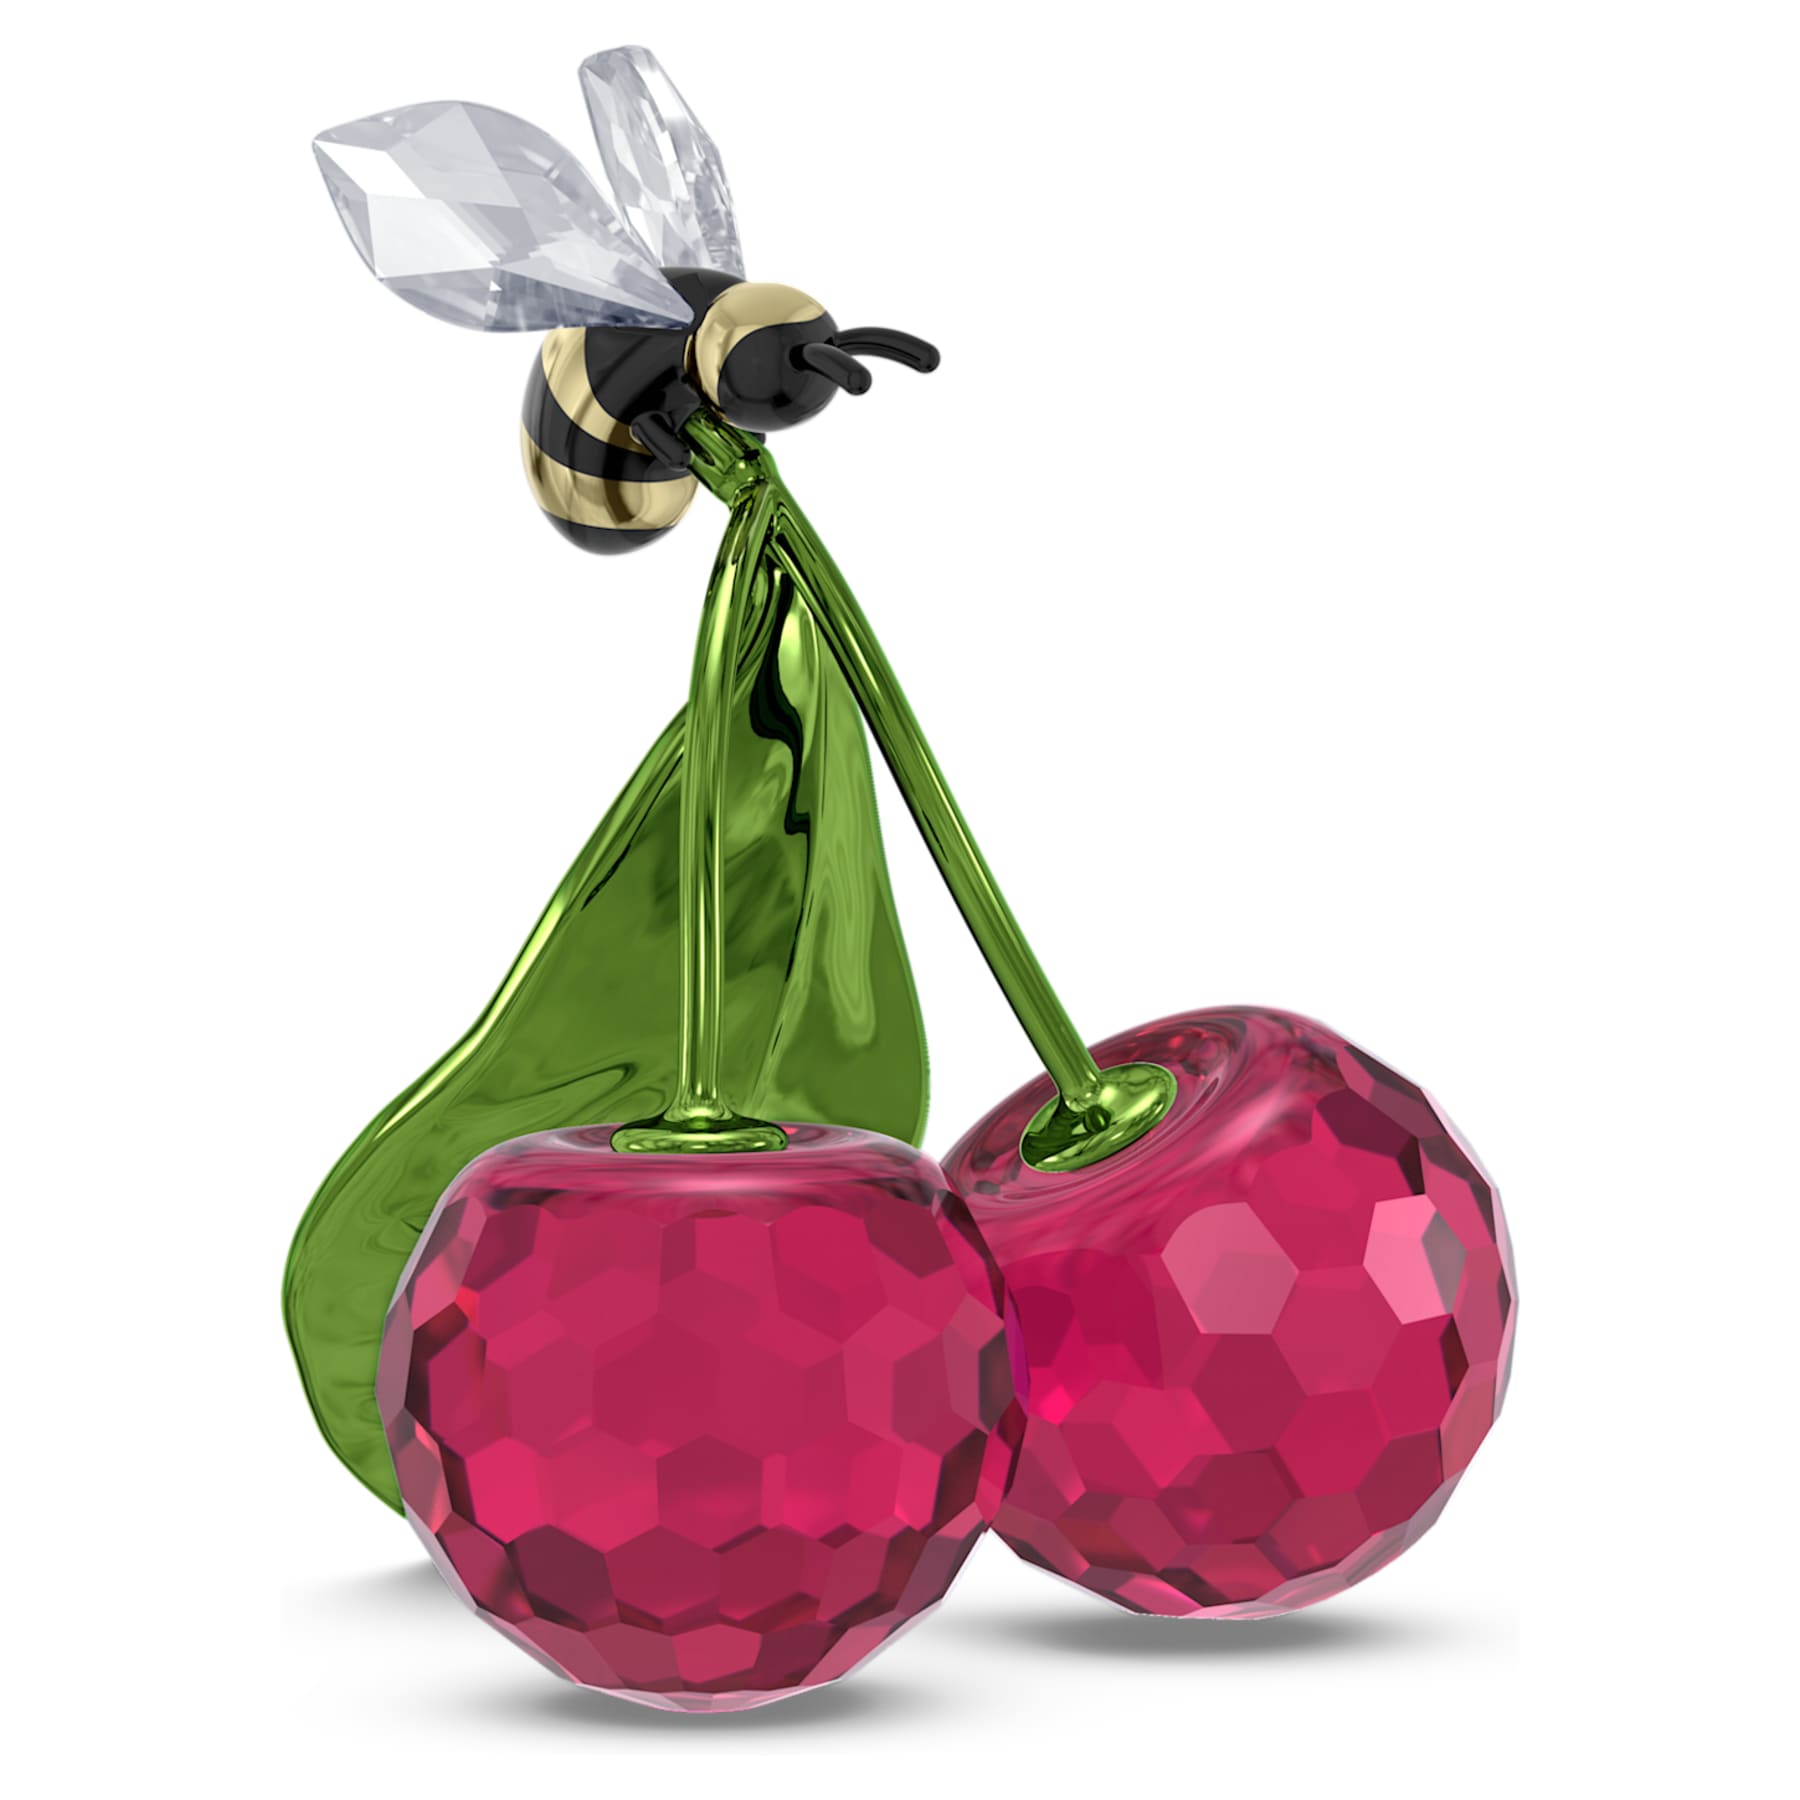 Idyllia - Bee and Cherry - Figurine - Swarovski